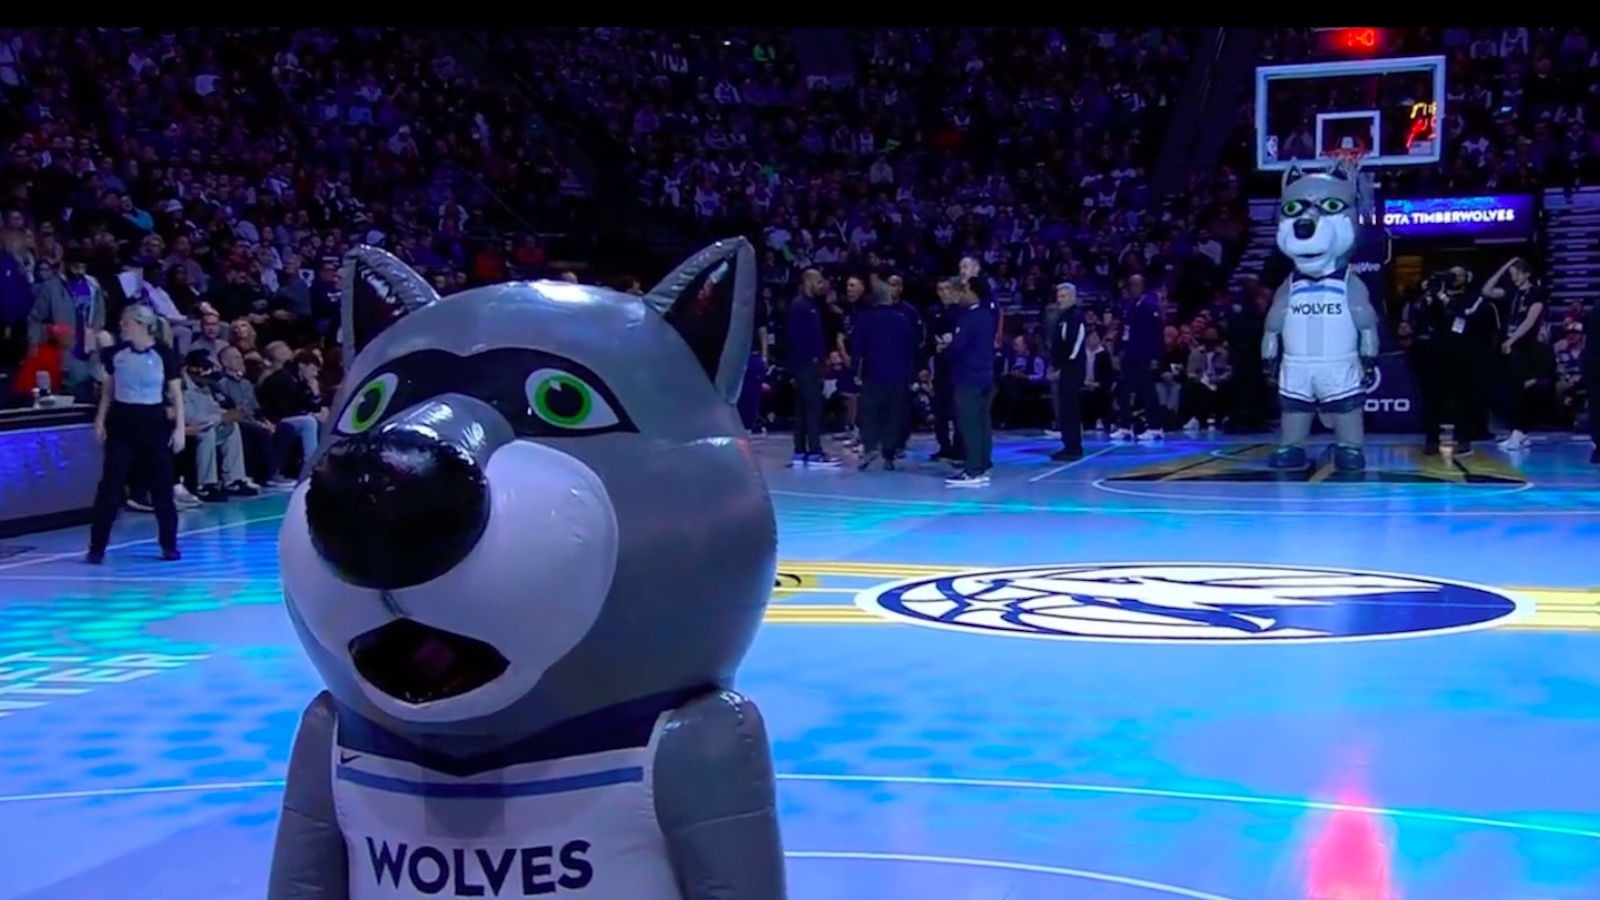 5 weirdest posts from NBA Brazil accounts after Timberwolves' Twitter video  goes viral